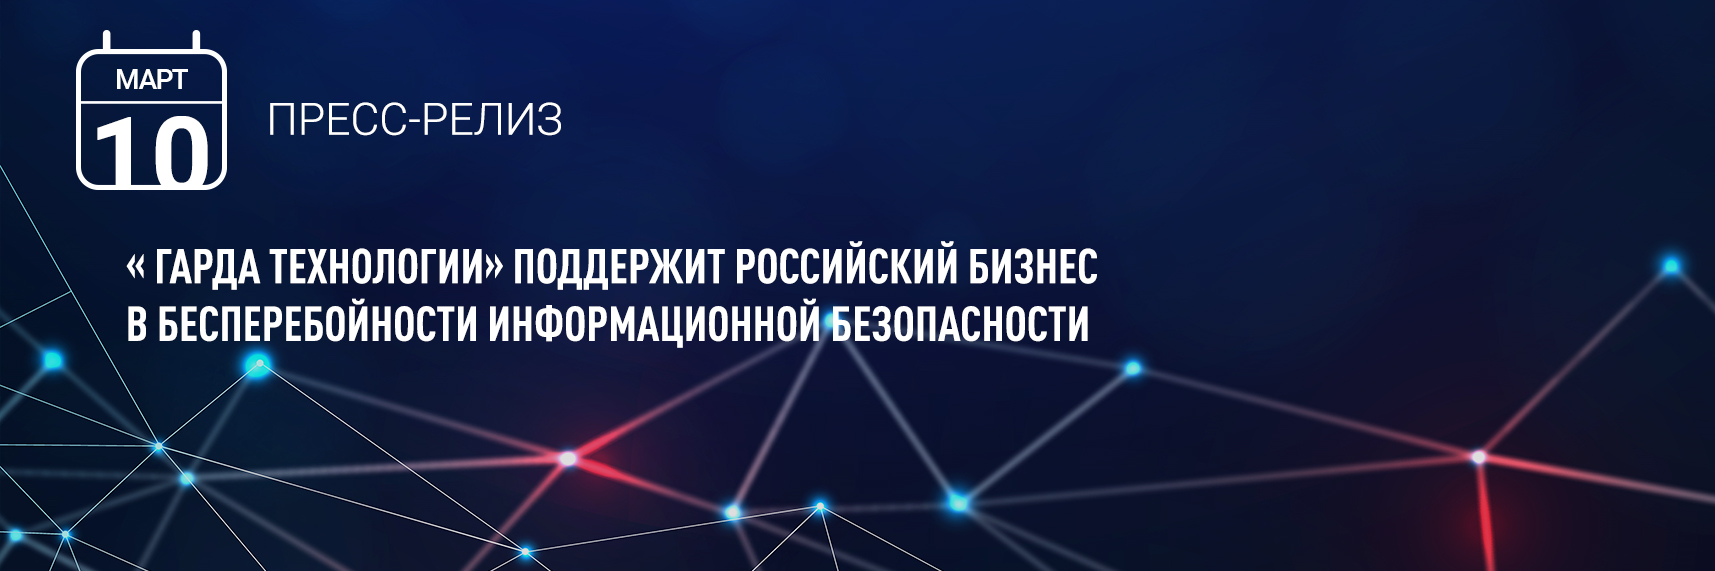 «Гарда Технологии» поддержит российский бизнес в бесперебойности информационной безопасности 